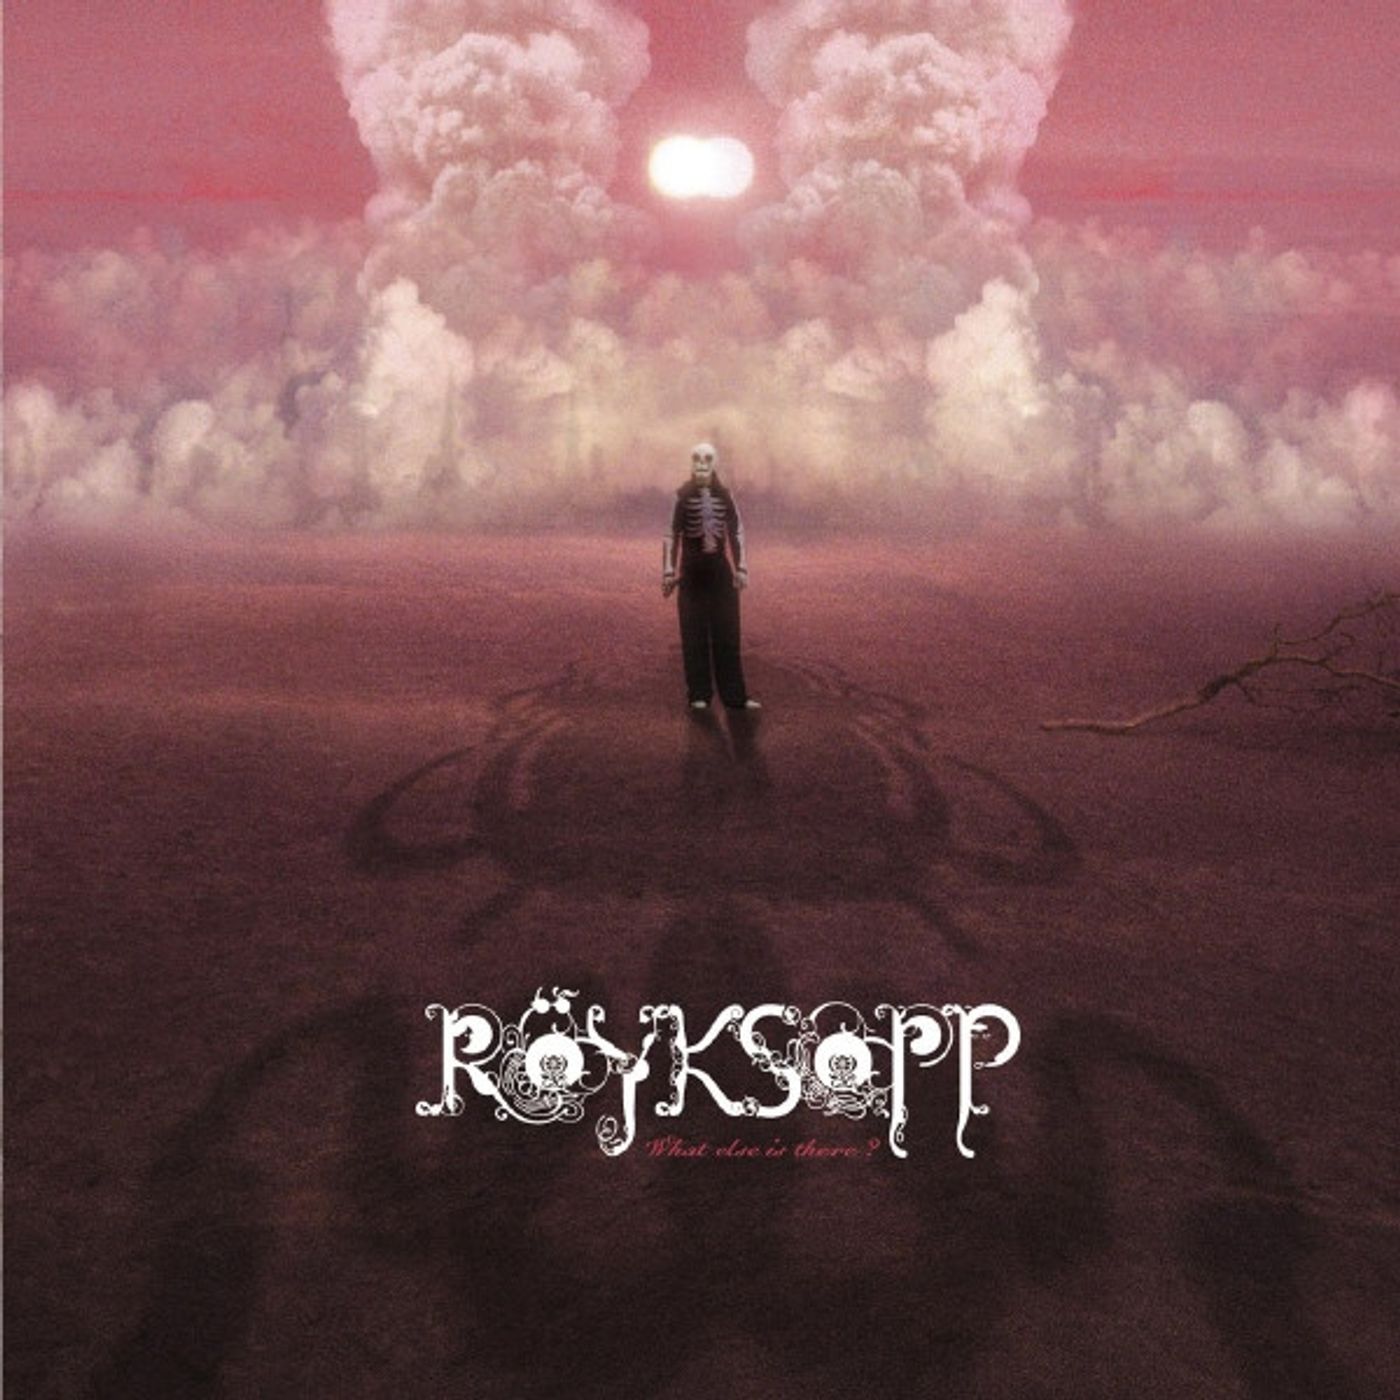 Röyksopp. Ricordiamo la band norvegese di musica elettronica, nota negli anni 90 e 2000 e che nel 2005 pubblicò la hit "What Else Is There?"